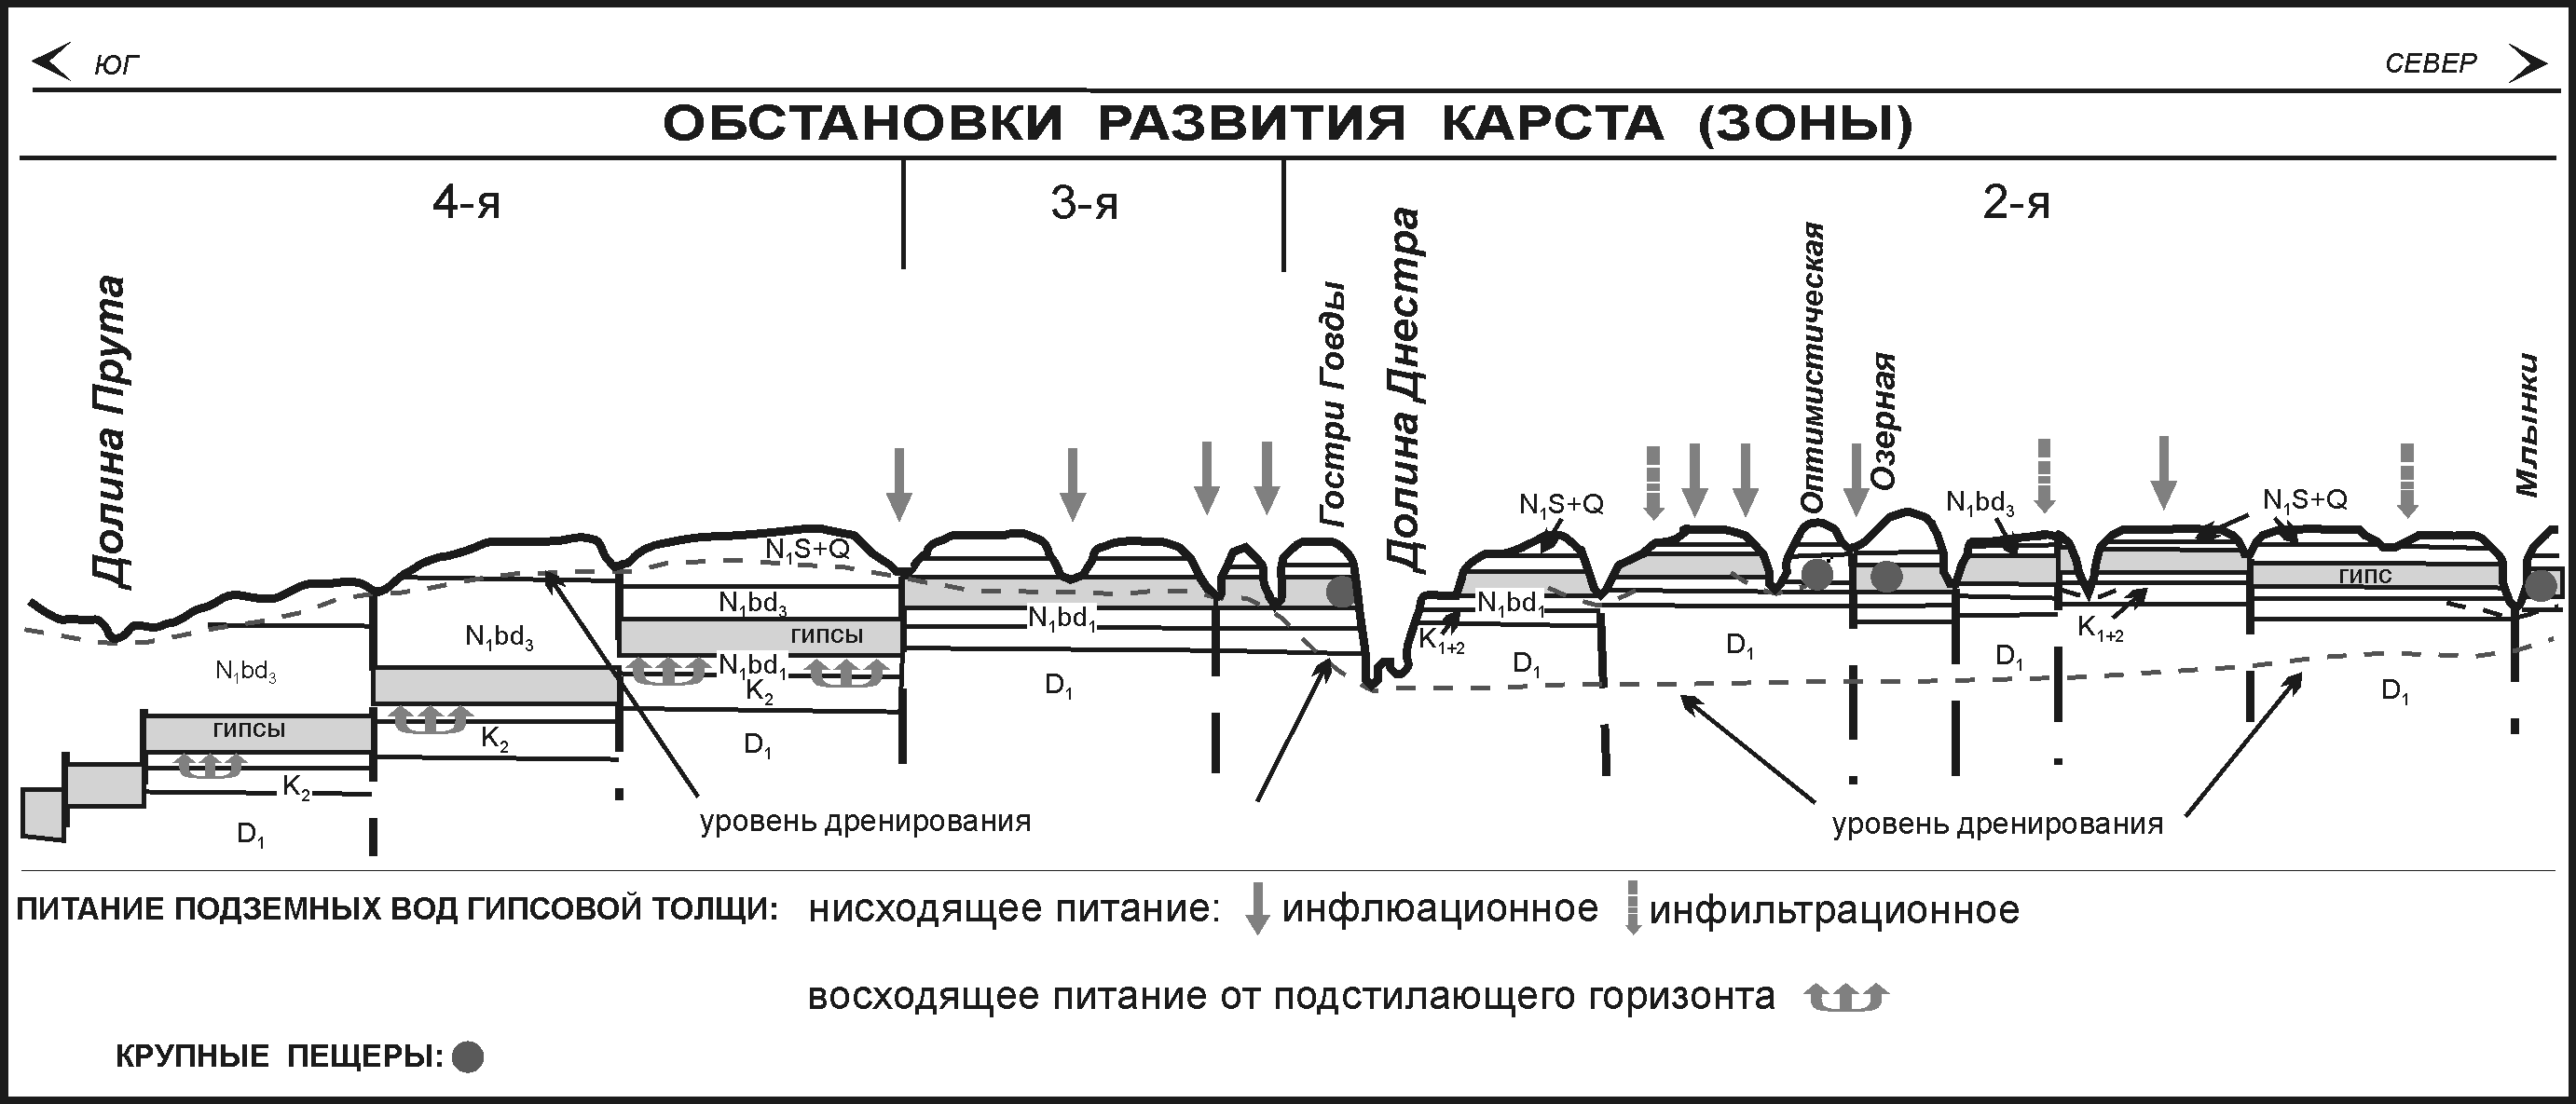 Геолого-карстологический профиль юго-западной окраины Восточно-Европейской платформы